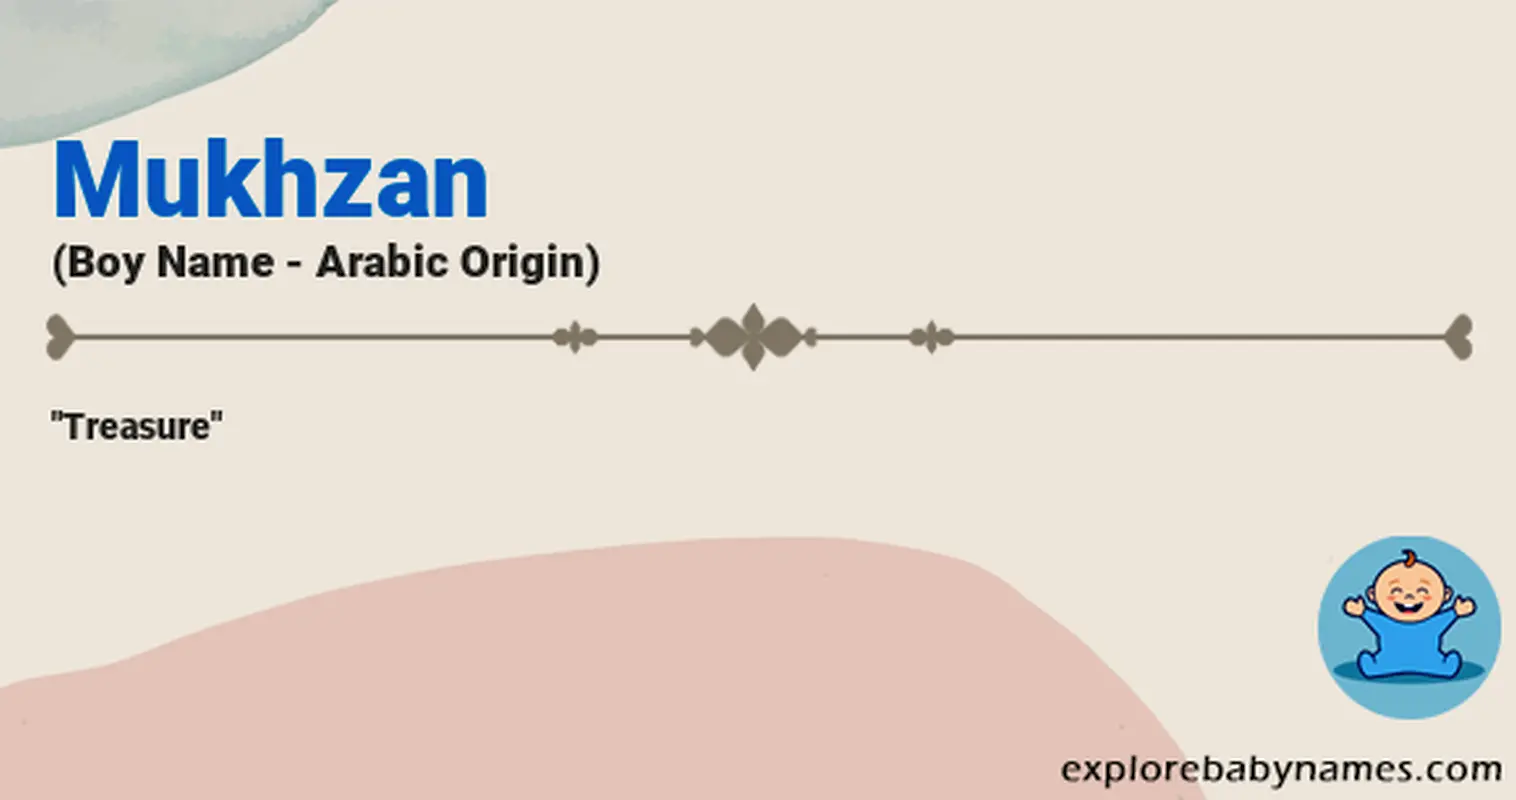 Meaning of Mukhzan